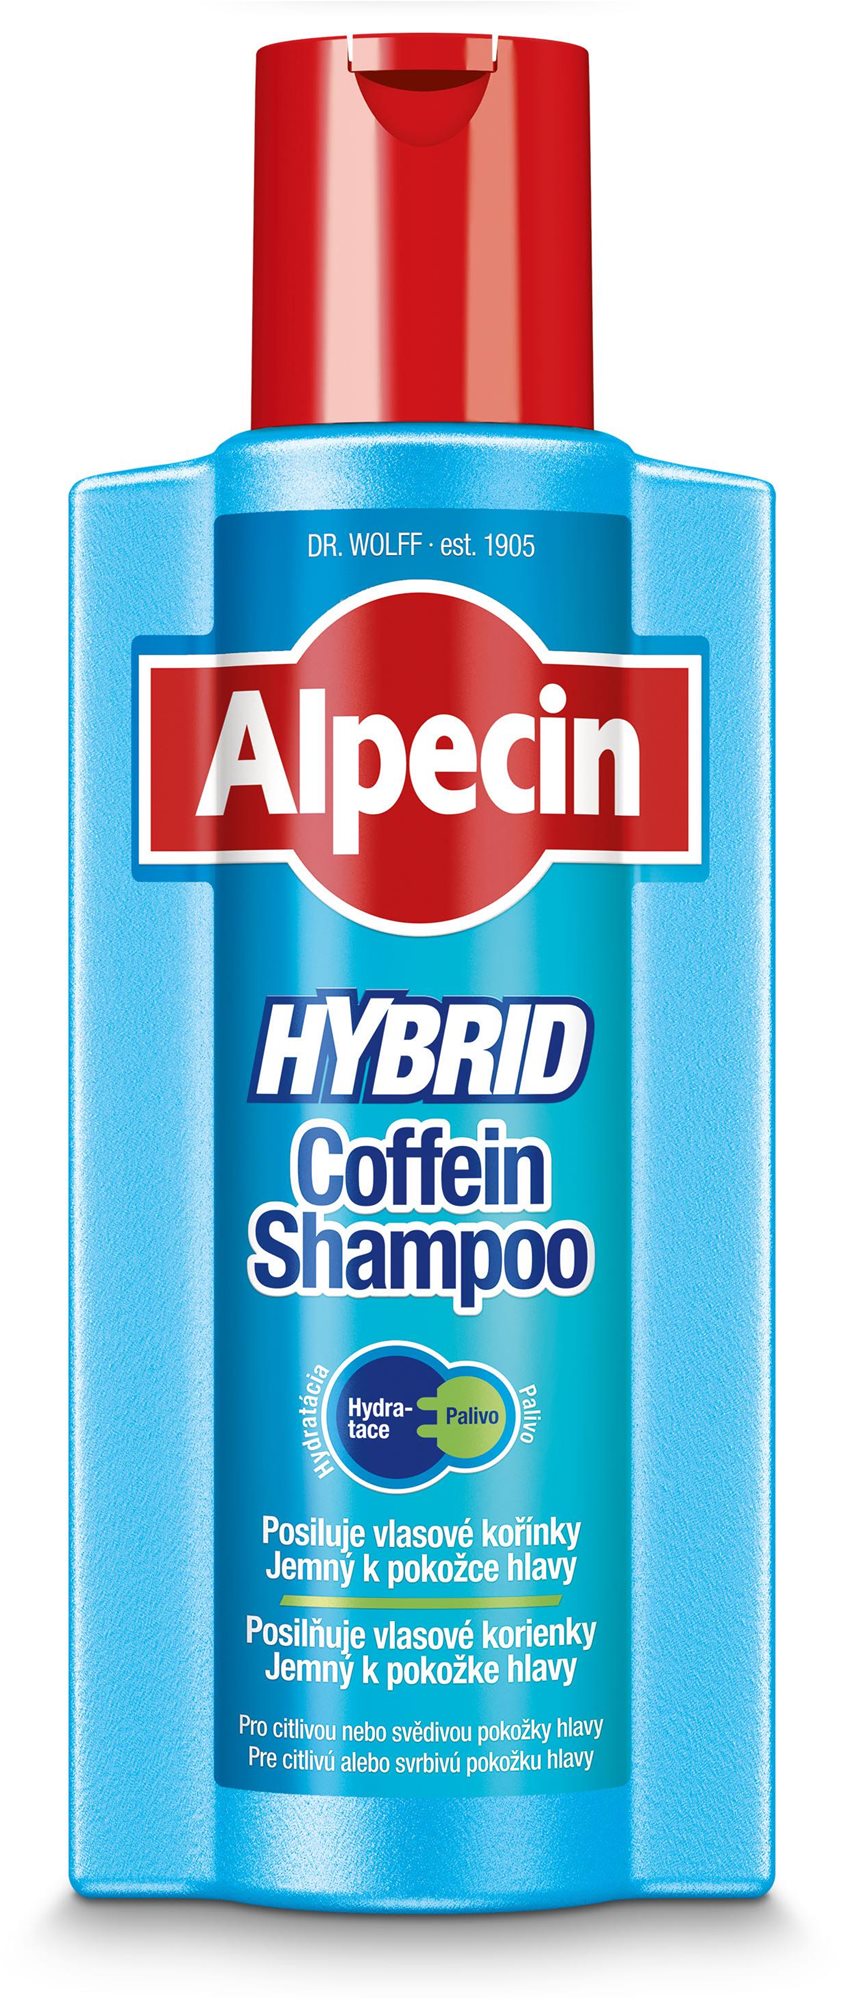 ALPECIN Hybrid Coffein Shampoo 375 ml